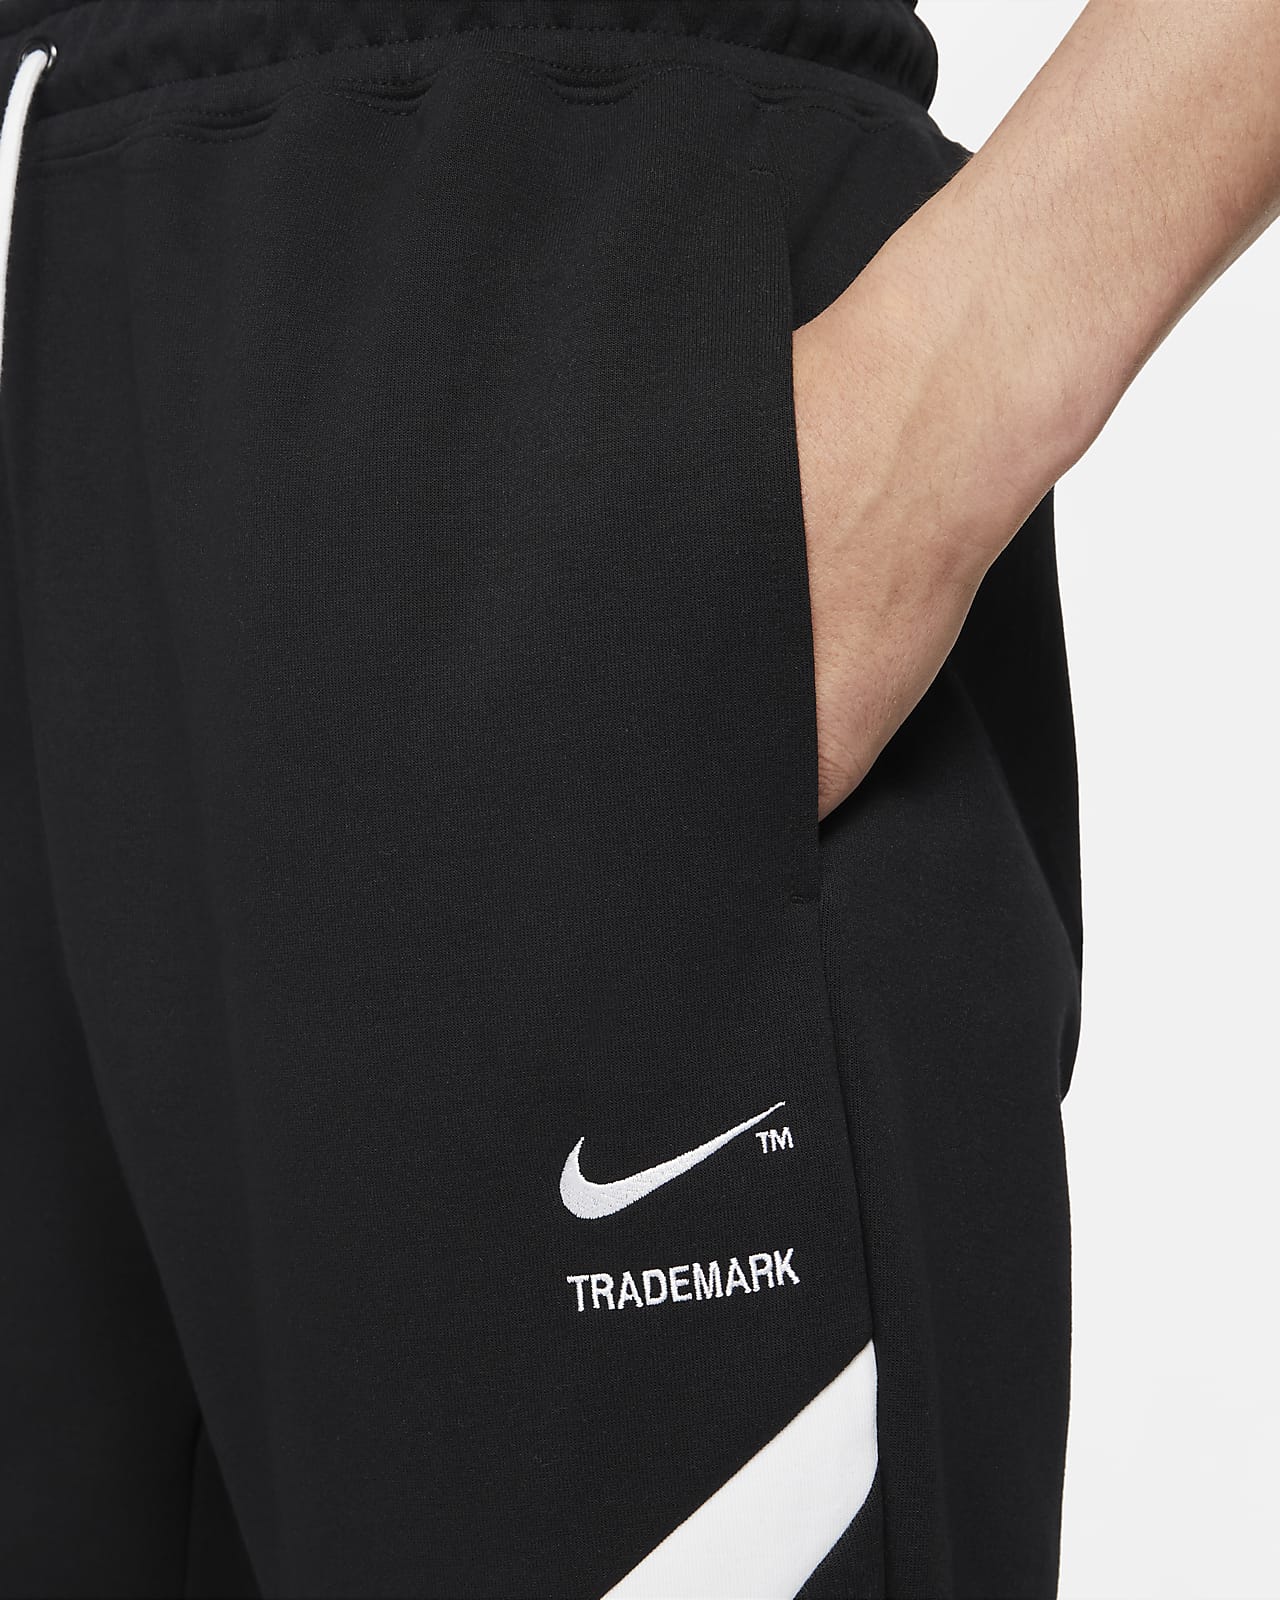 Nike Mens Sportswear Tech Fleece Jogger Pants Grey 2XL | Rebel Sport